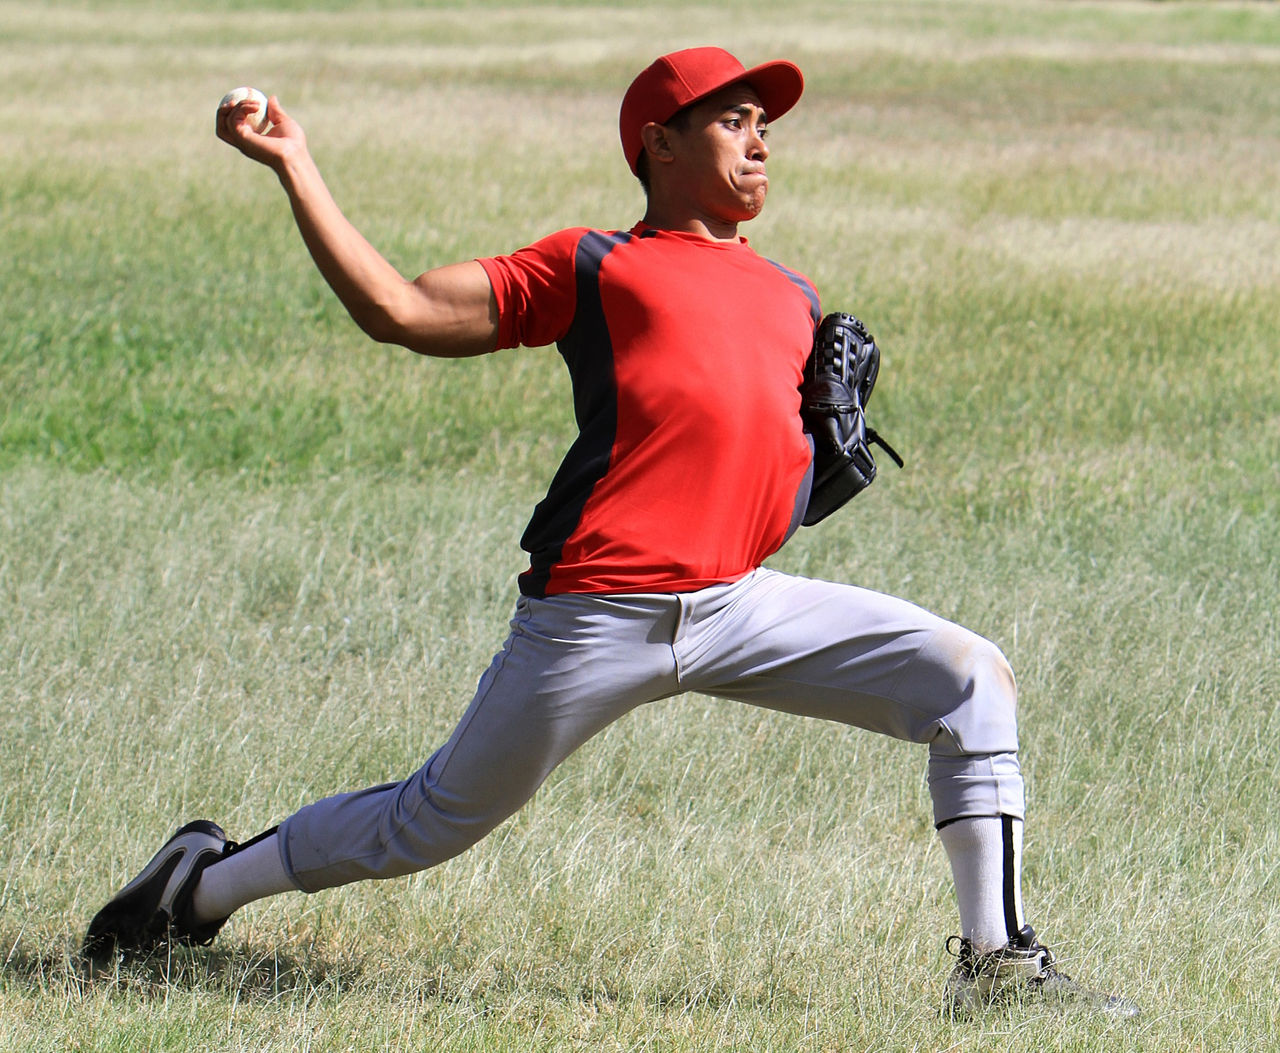 A baseball pitcher throws a ball.